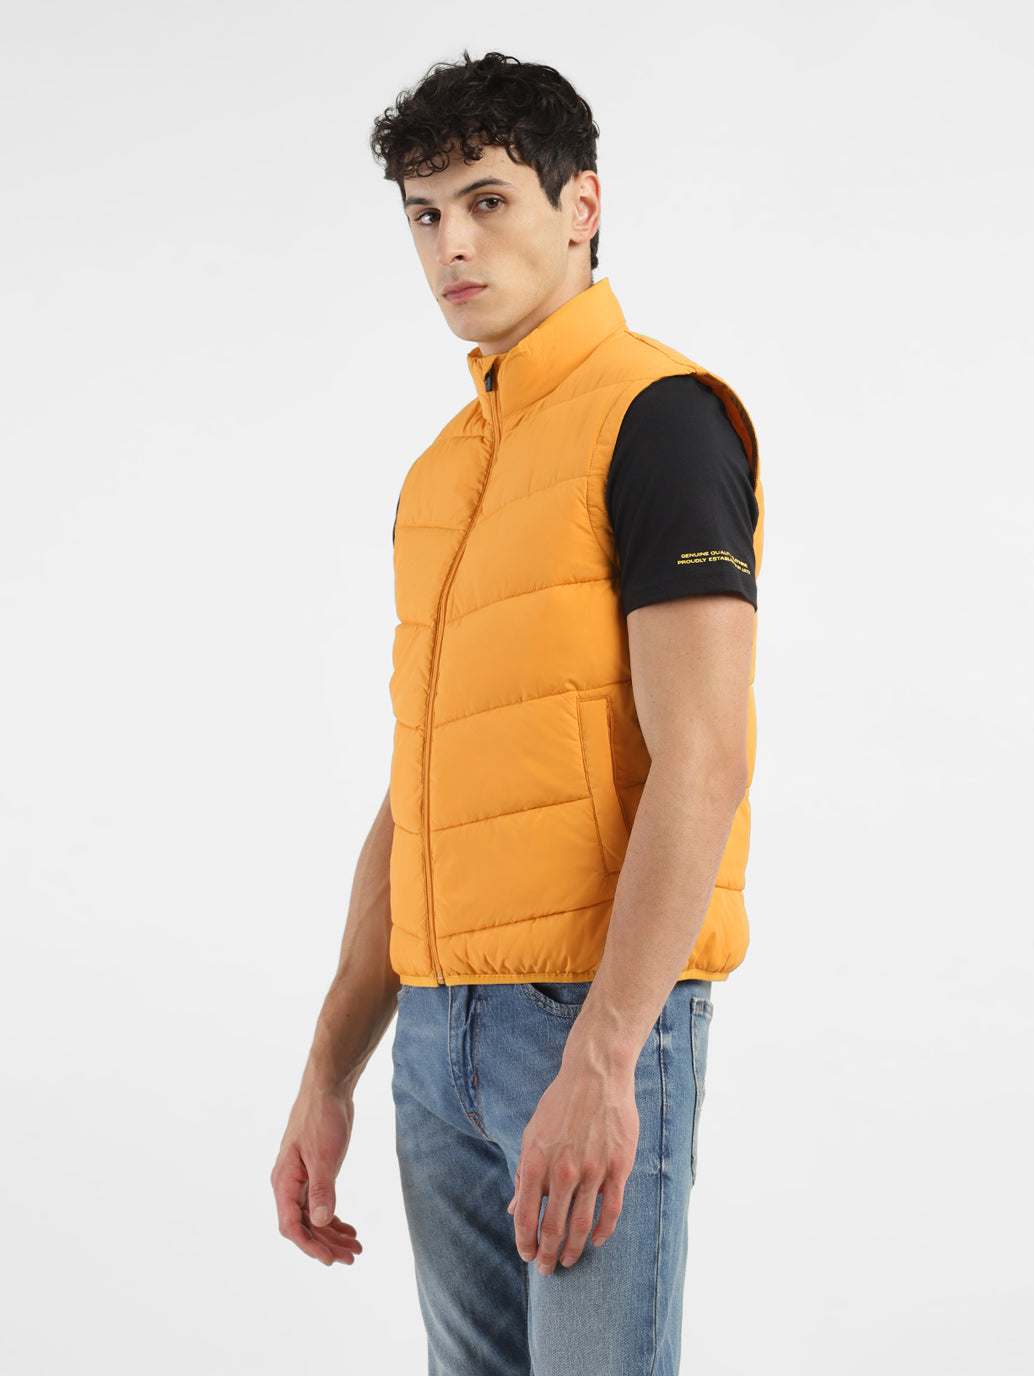 Men's Yellow High Neck Puffer Jackets